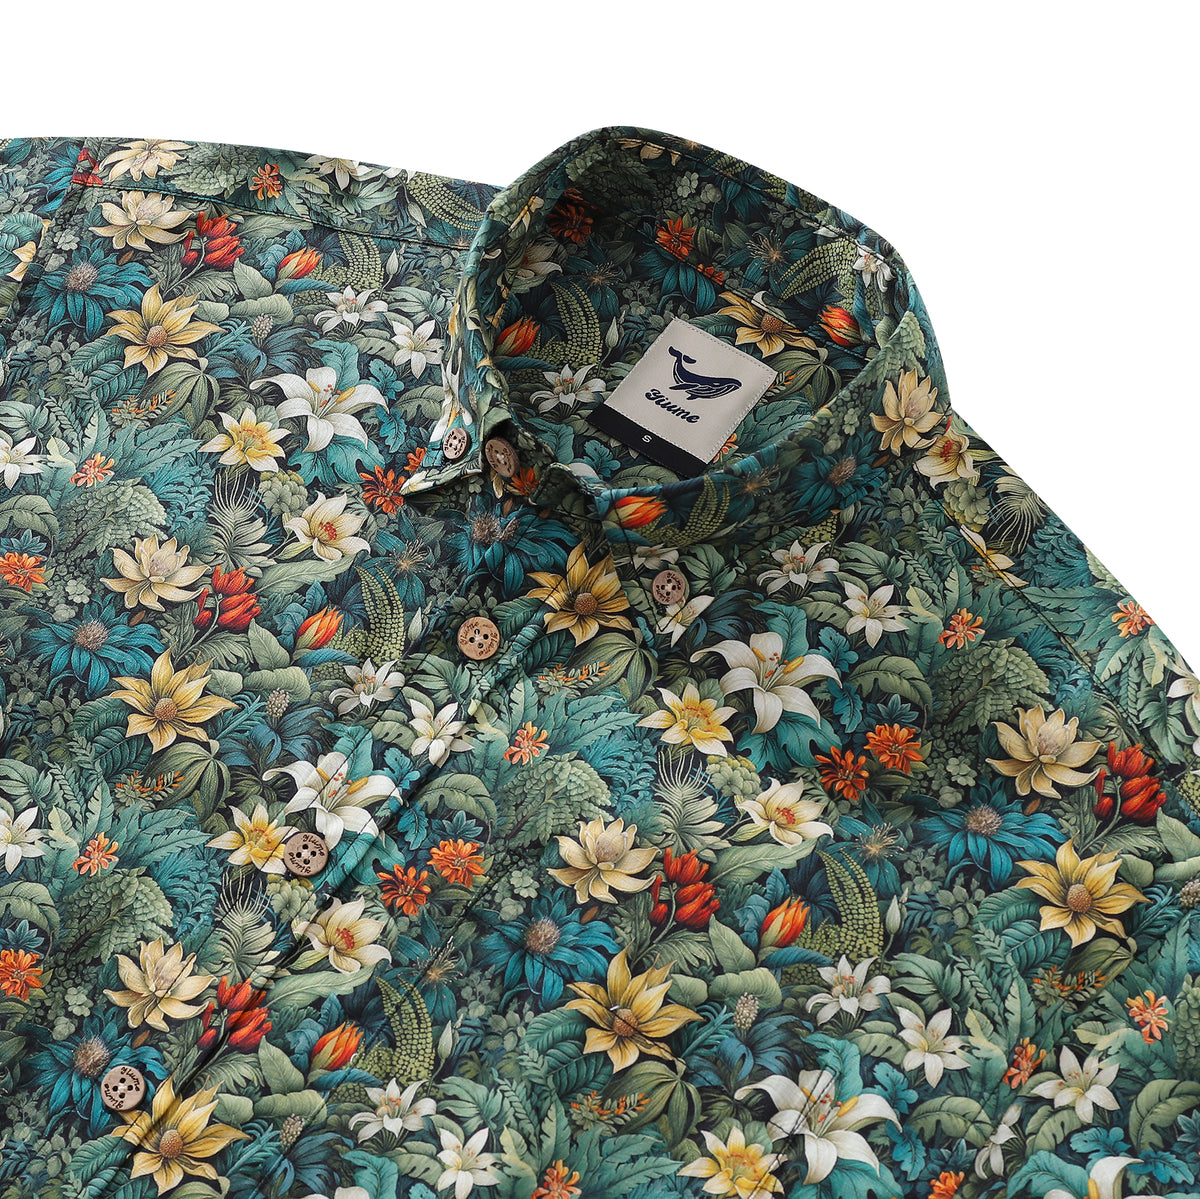 Men's Hawaiian Shirt Jungle Adventure Print Cotton Button-down Short S ...